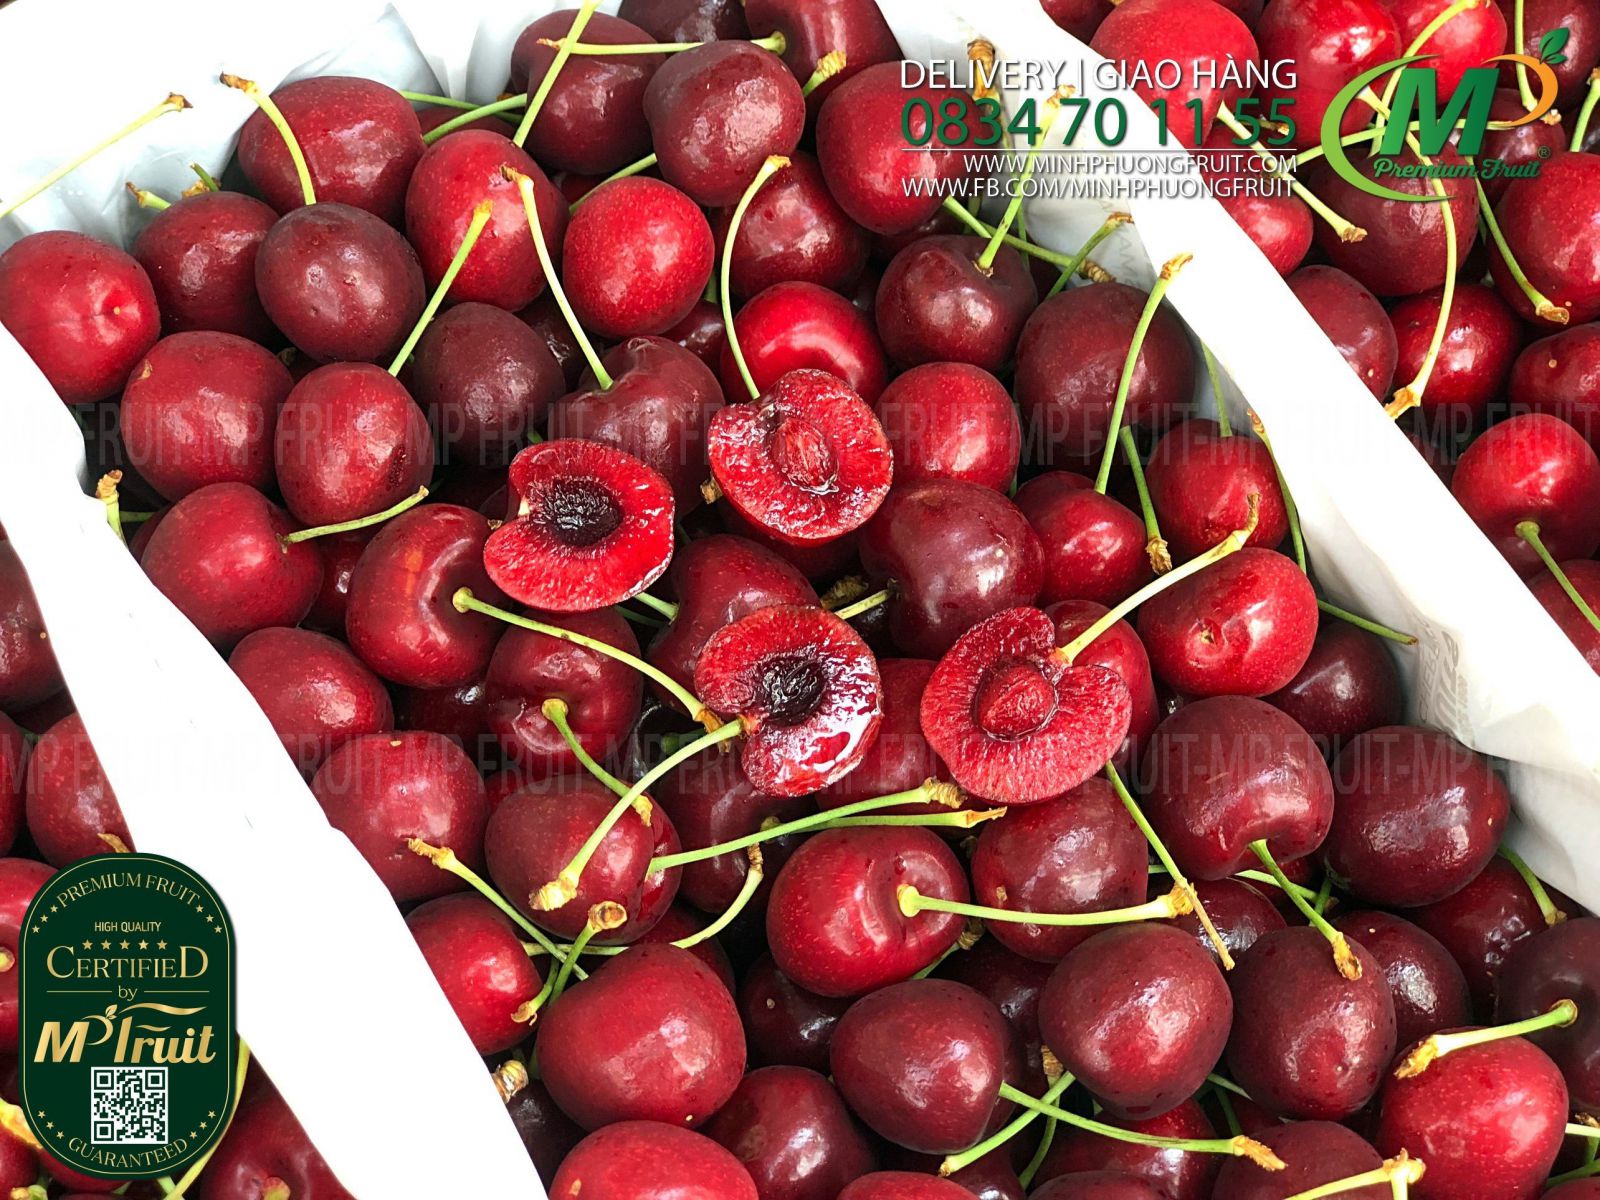 Cherry Đỏ Tasmania Size 28-30 | Reid Fruits thương hiệu lâu năm của Úc tại MP Fruit